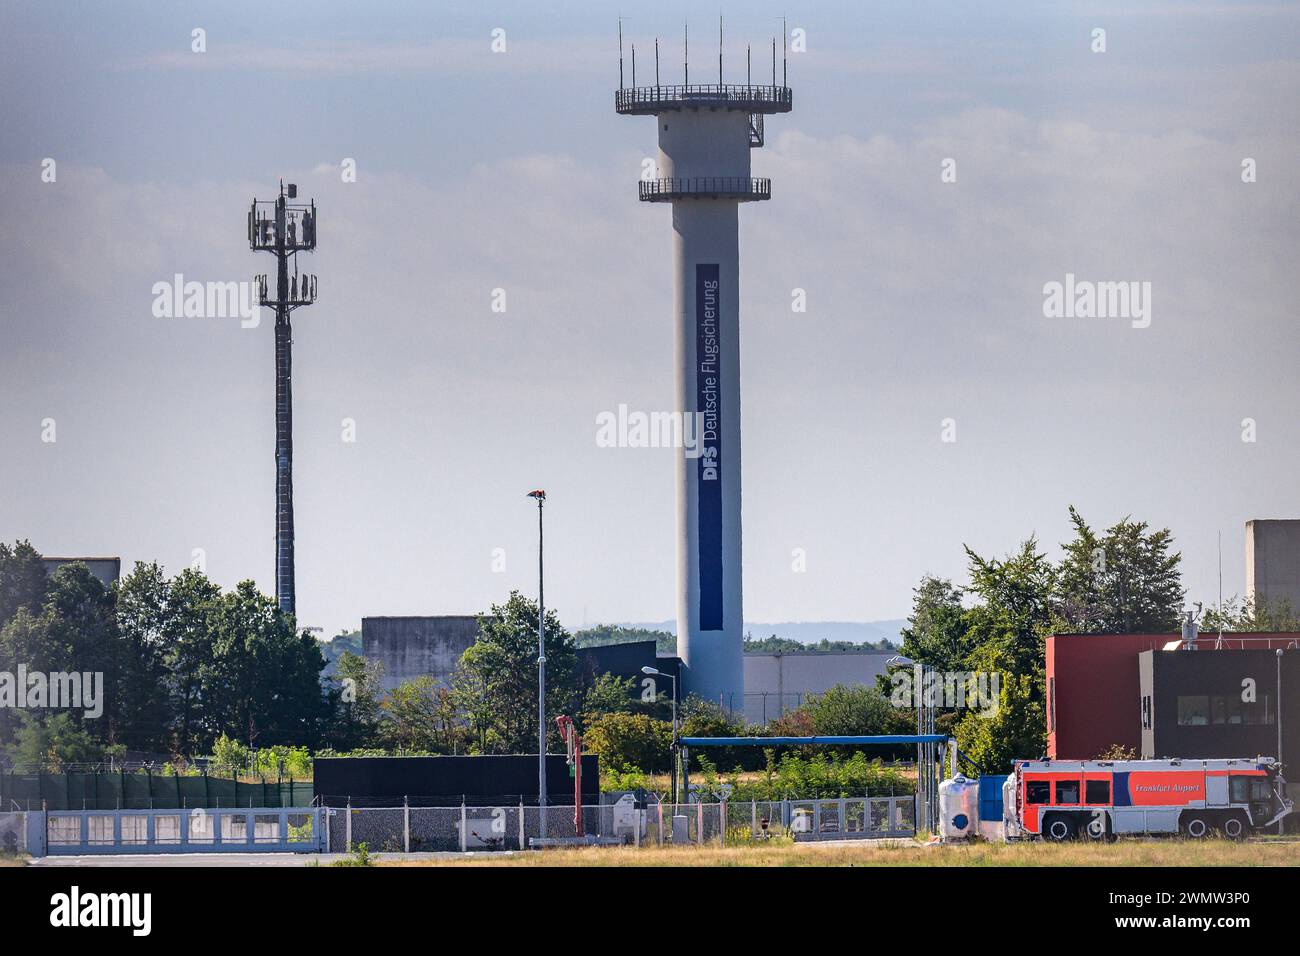 FRANCOFORTE, GERMANIA 11.08.2019 torre radar della Deutsche Flugsicherung - DFS, servizi di navigazione aerea tedeschi - presa all'aeroporto di Francoforte Foto Stock